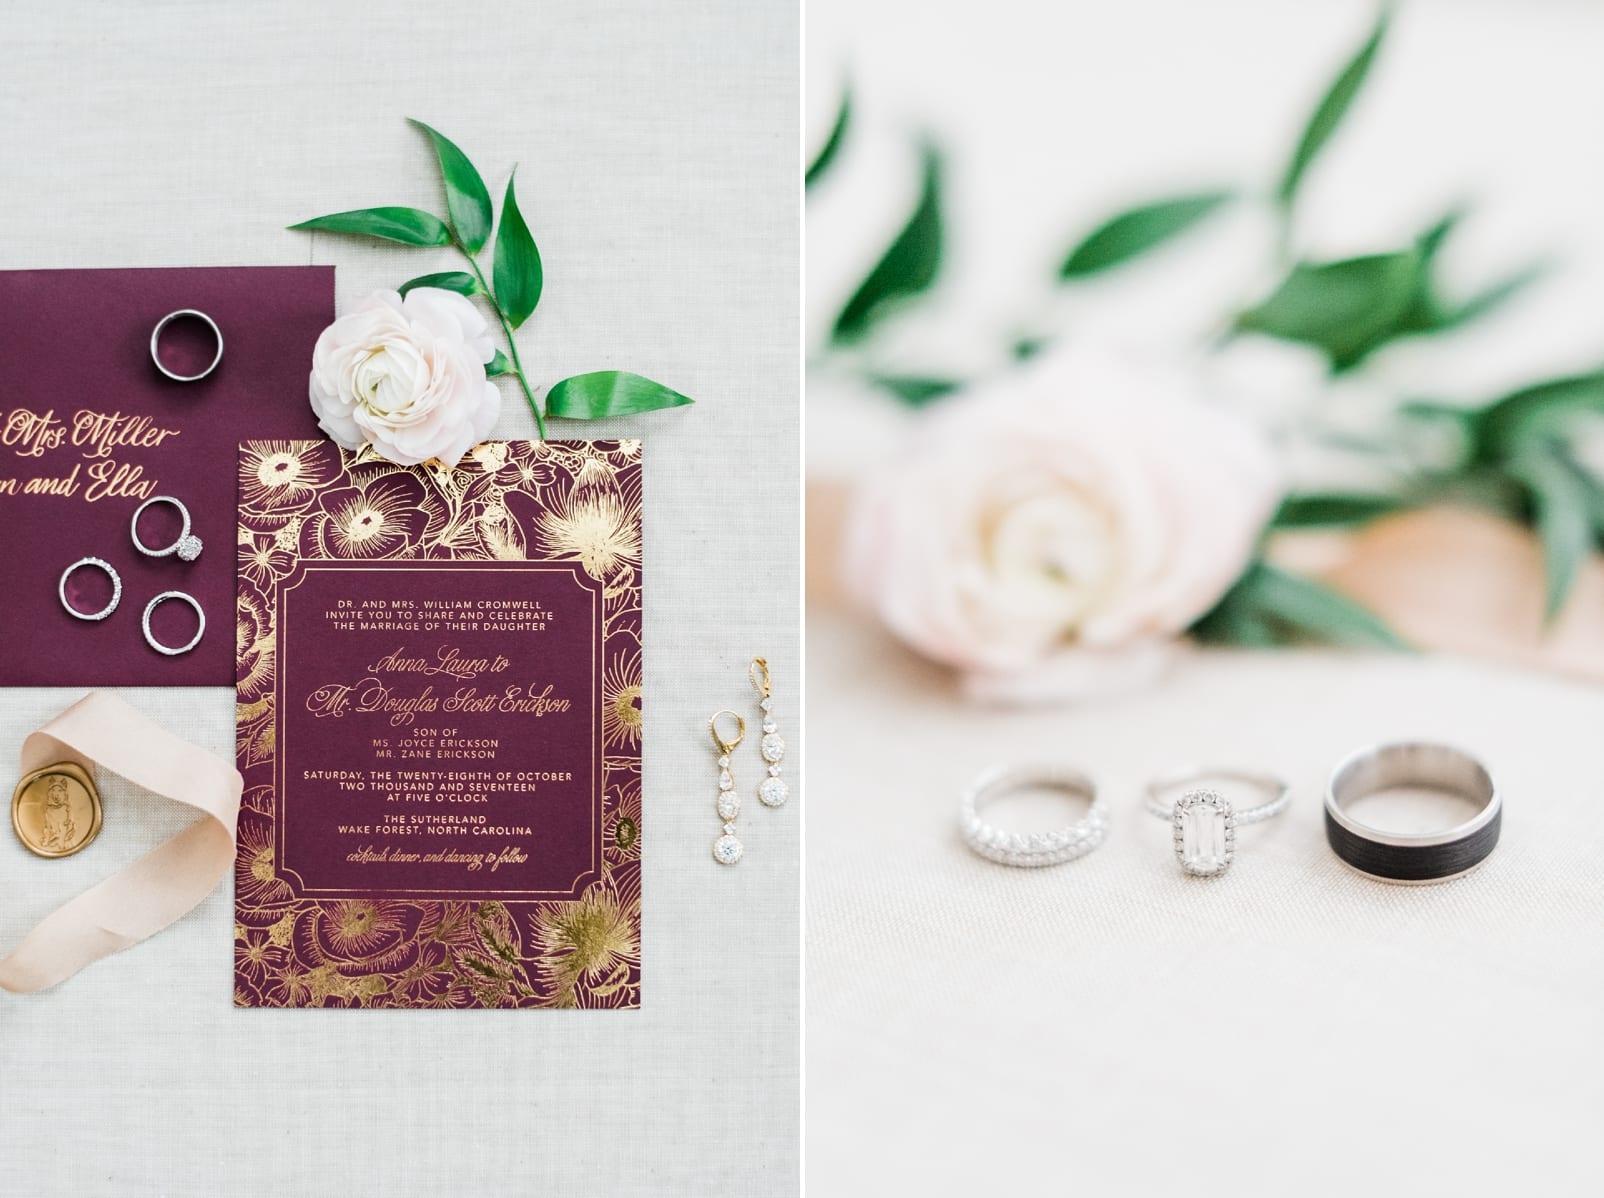 sutherland estate wedding photographer burgundy wedding invitation inspiration emerald engagement ring photo